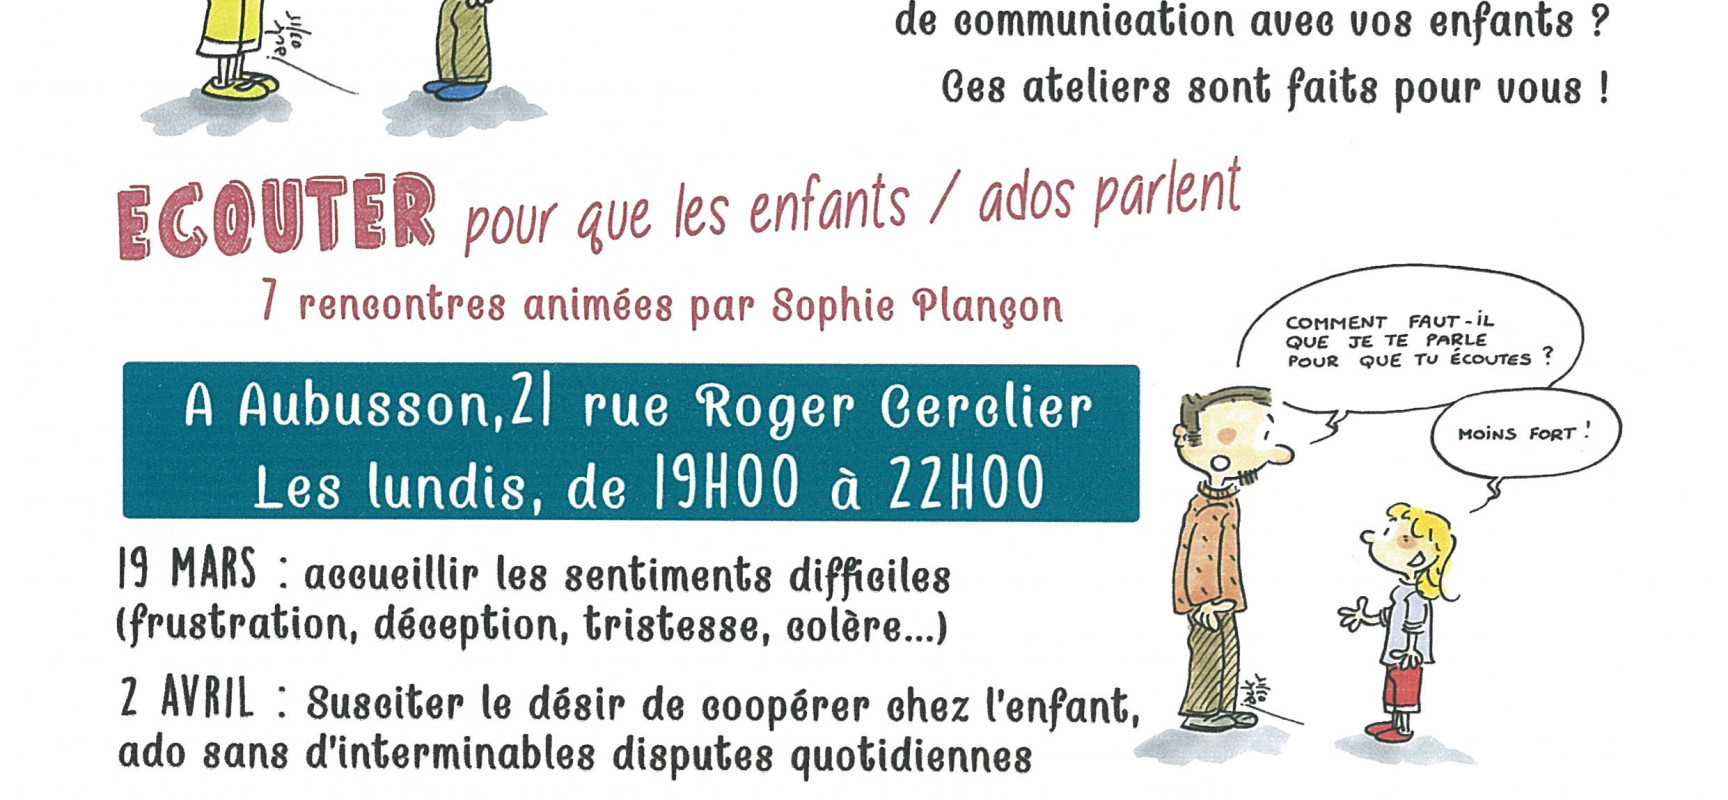 Atelier de communication Parents – Enfants/Ado #Aubusson